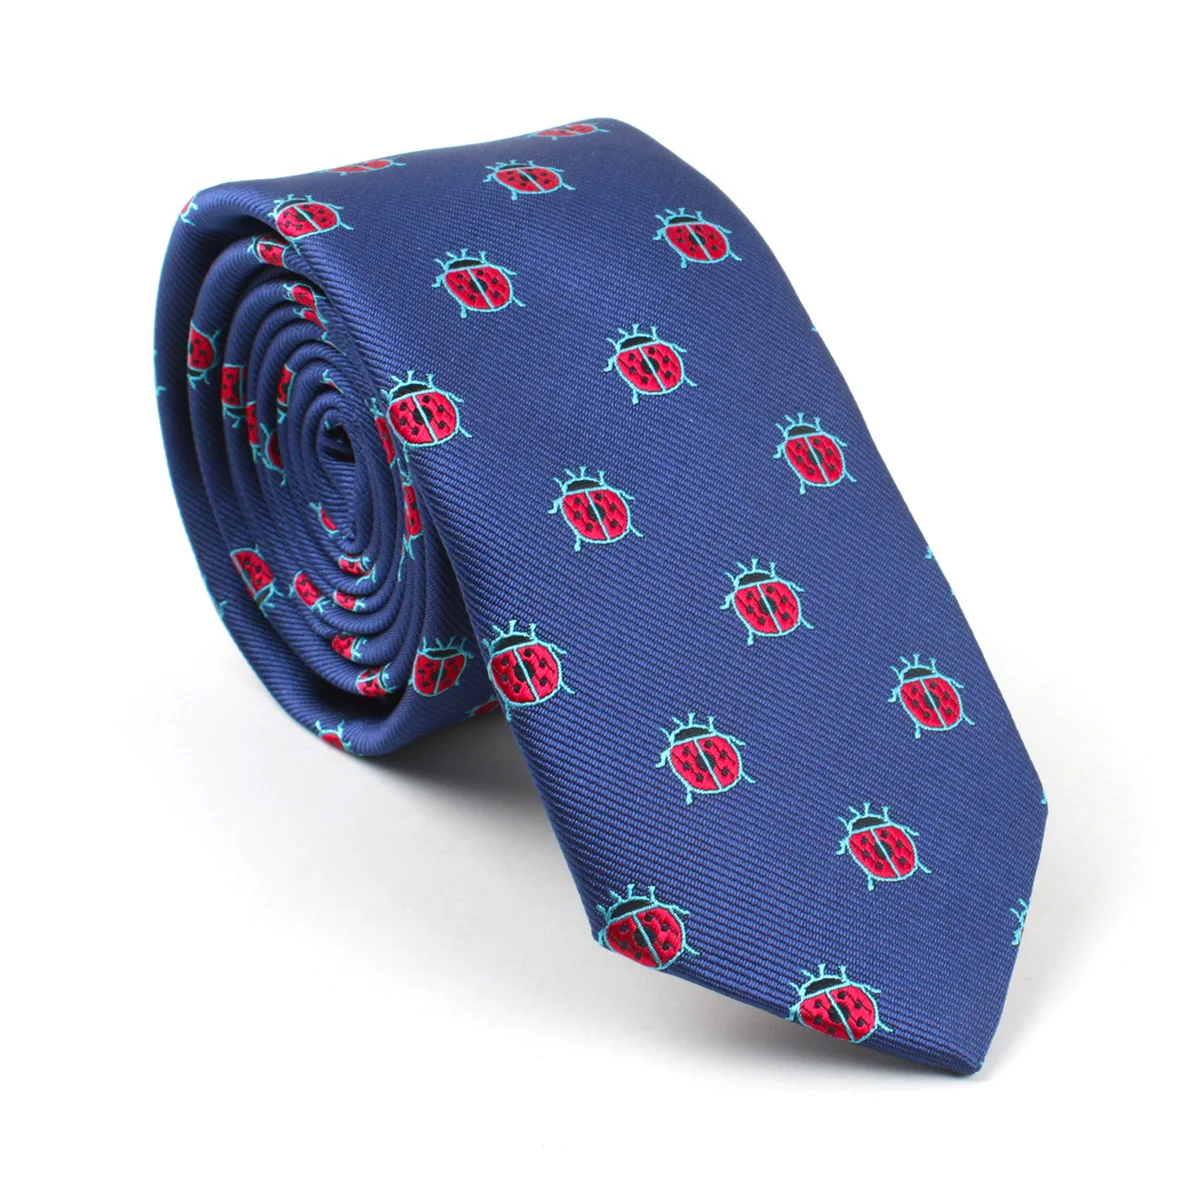 Мужской галстук 6 см ширина мультфильм собака слон Акула утка велосипед автомобиль шаблон шеи галстук для мужчин подарок corbatas para hombre